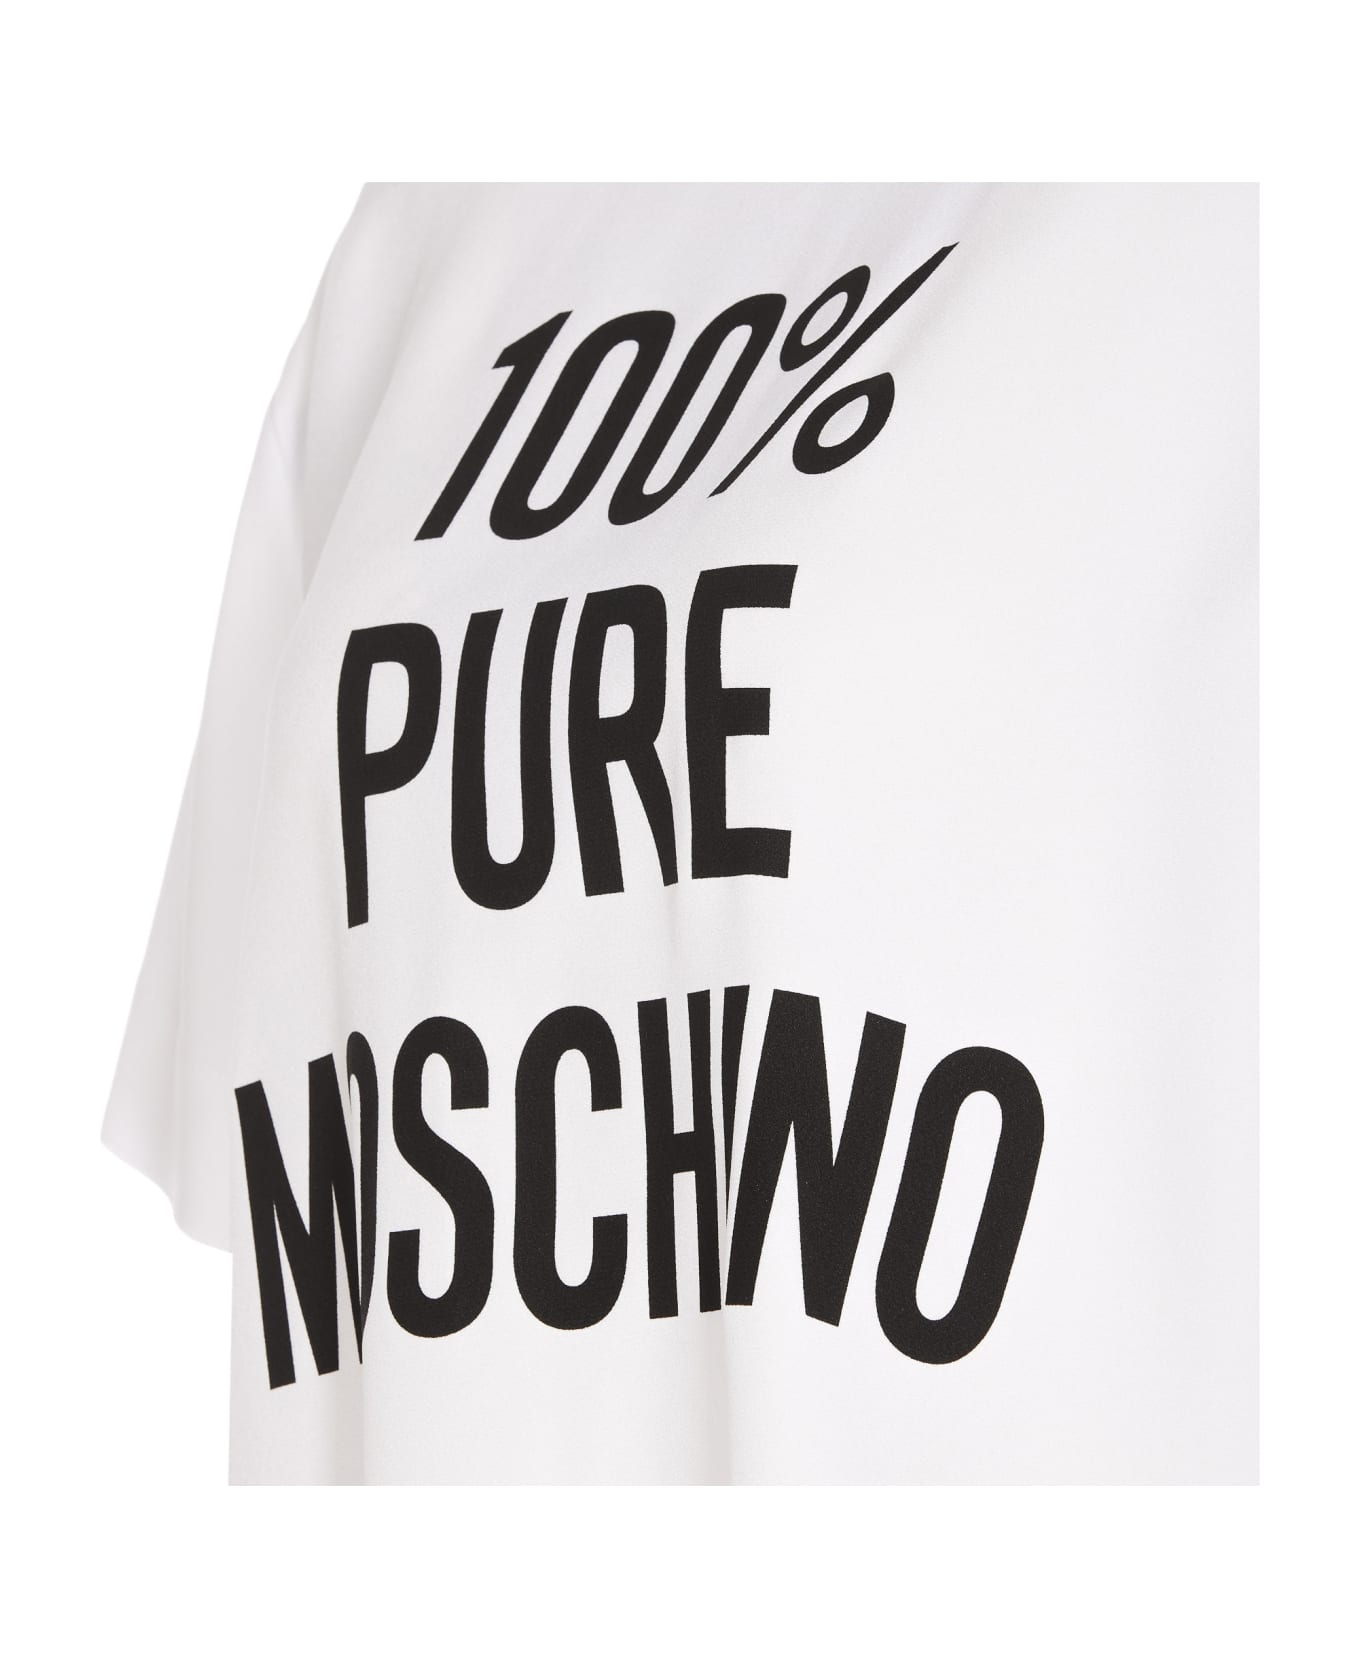 Moschino Pure Moschino Print T-shirt - White